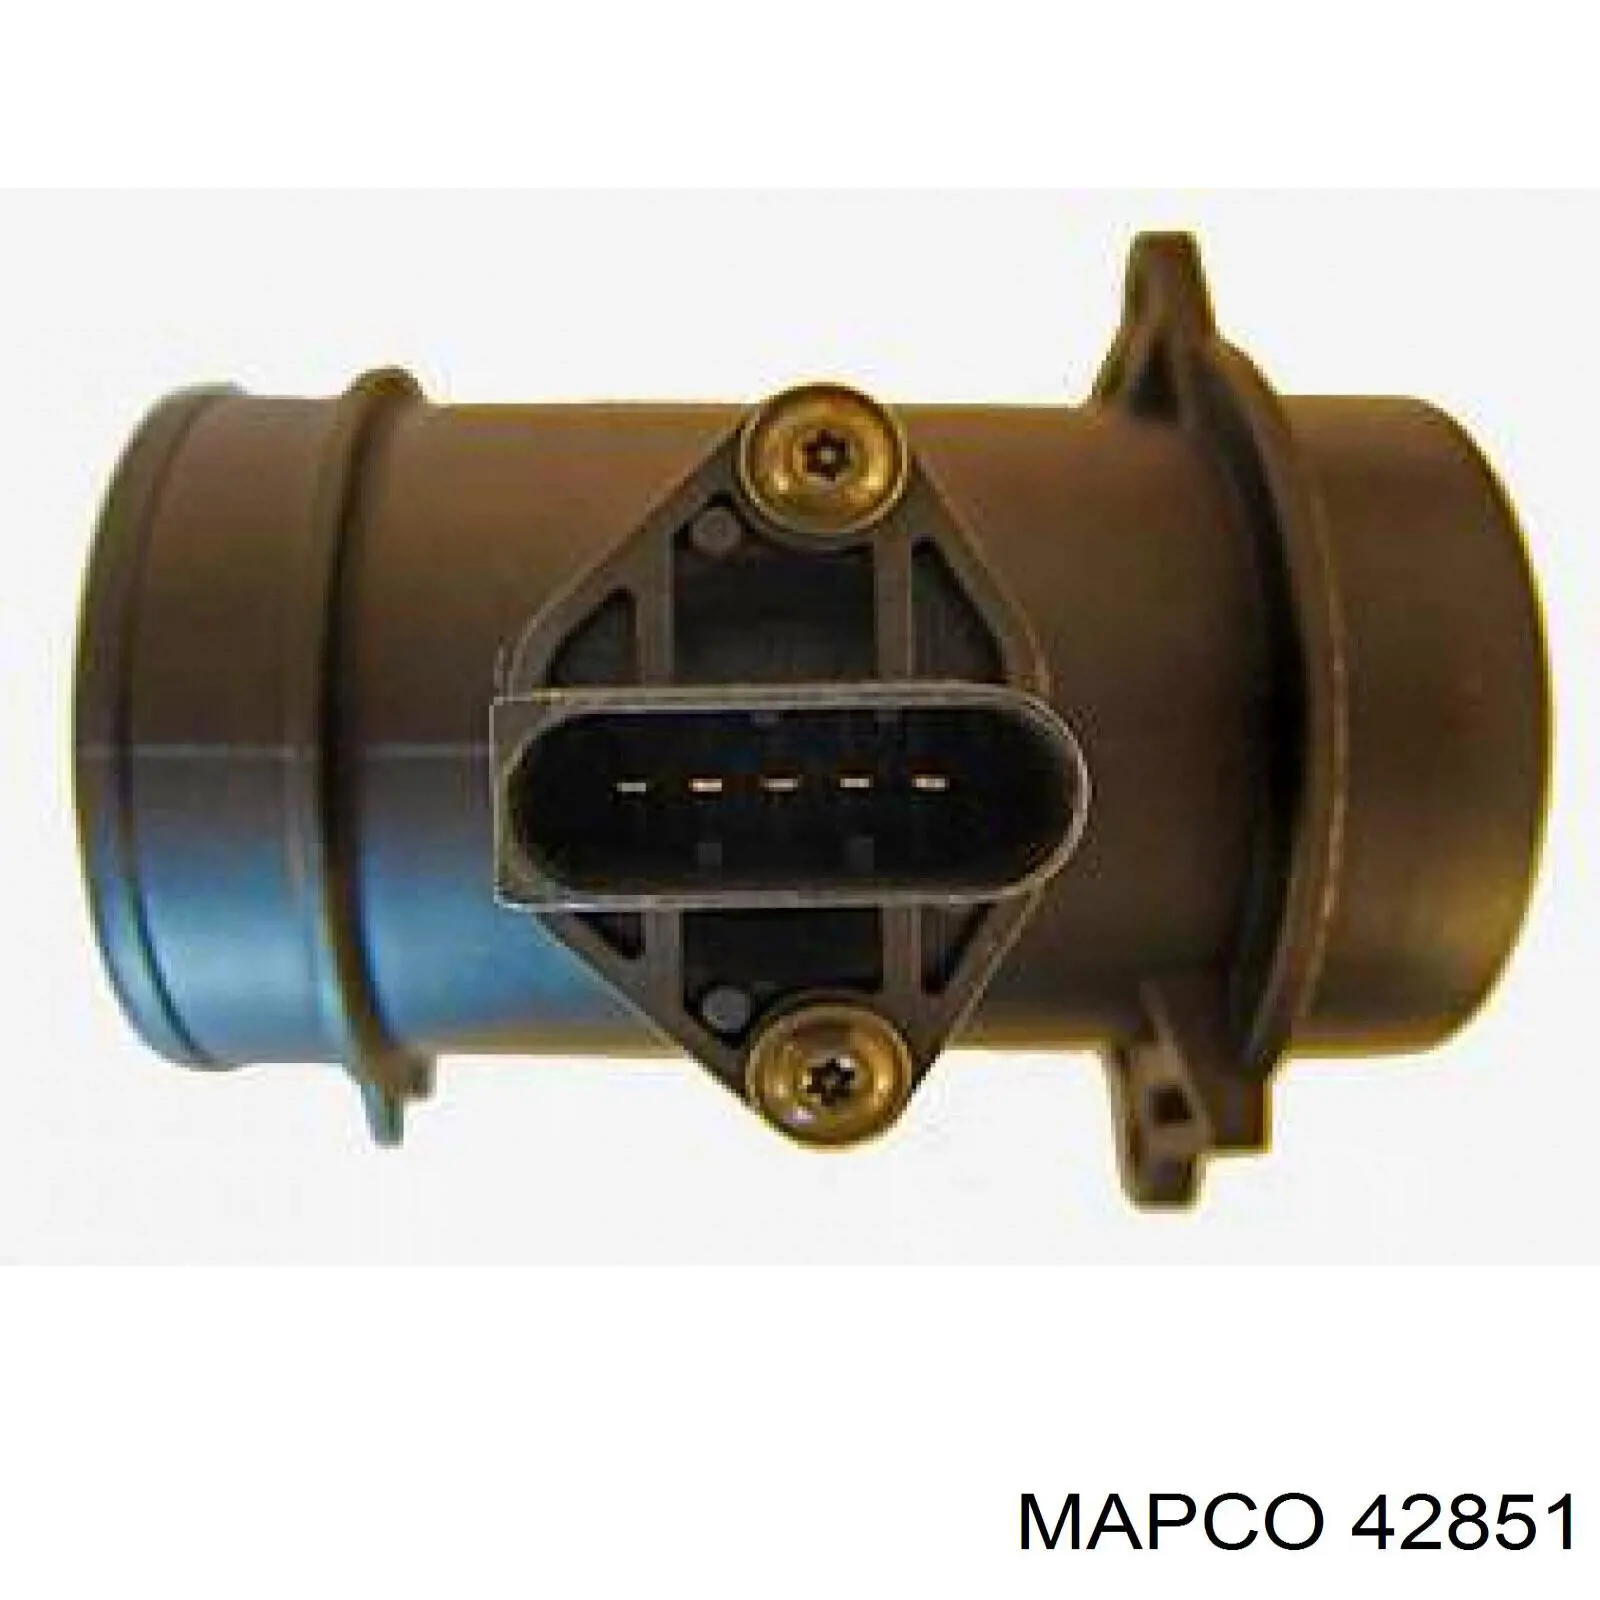 Sensor De Flujo De Aire/Medidor De Flujo (Flujo de Aire Masibo) 42851 Mapco